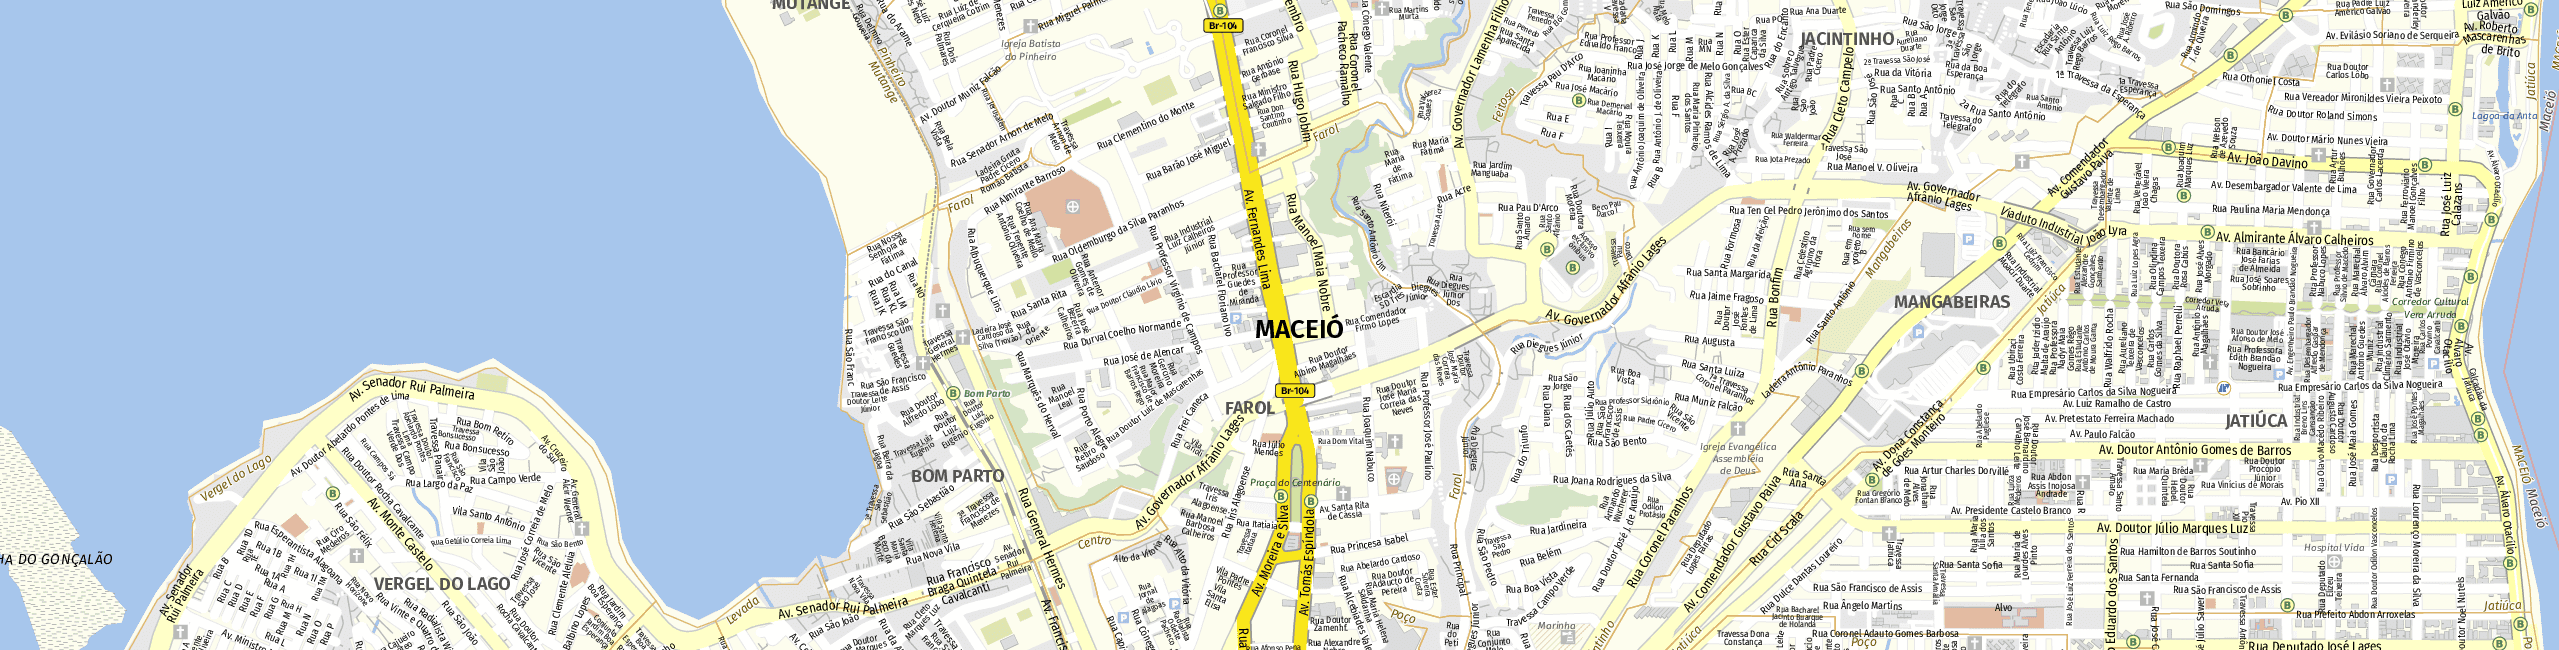 Stadtplan Maceió zum Downloaden.